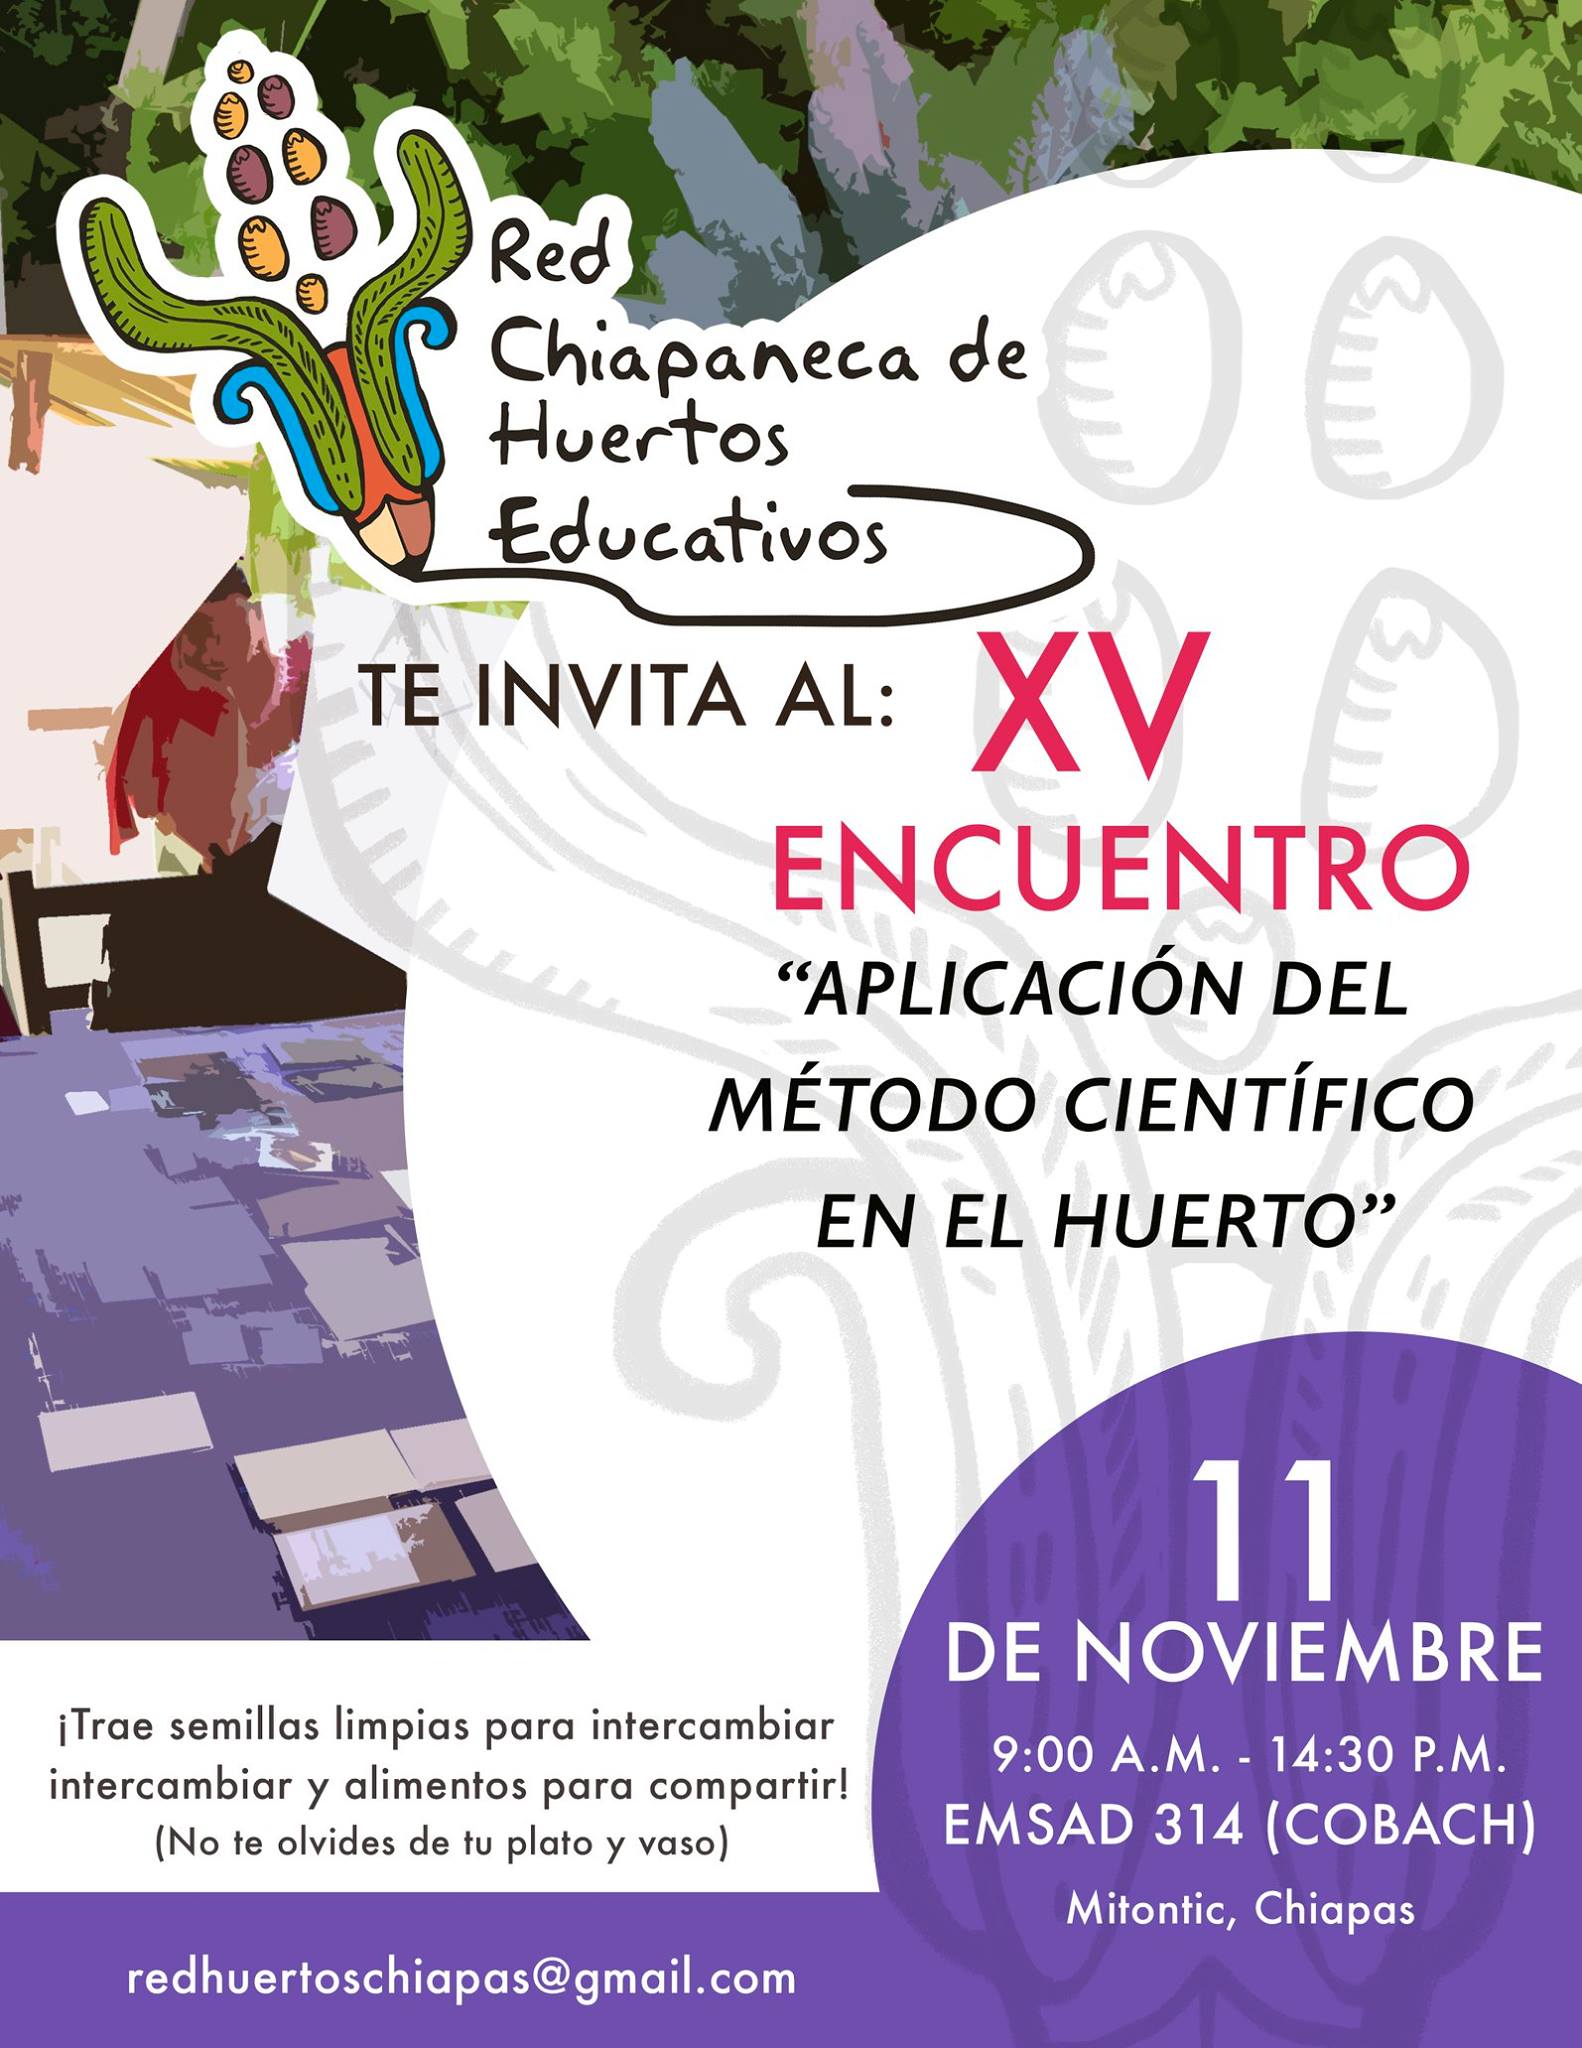 La Red Chiapaneca de Huertos Educativos nos invita a su XV encuentro, el 11 de noviembre en Mitontic